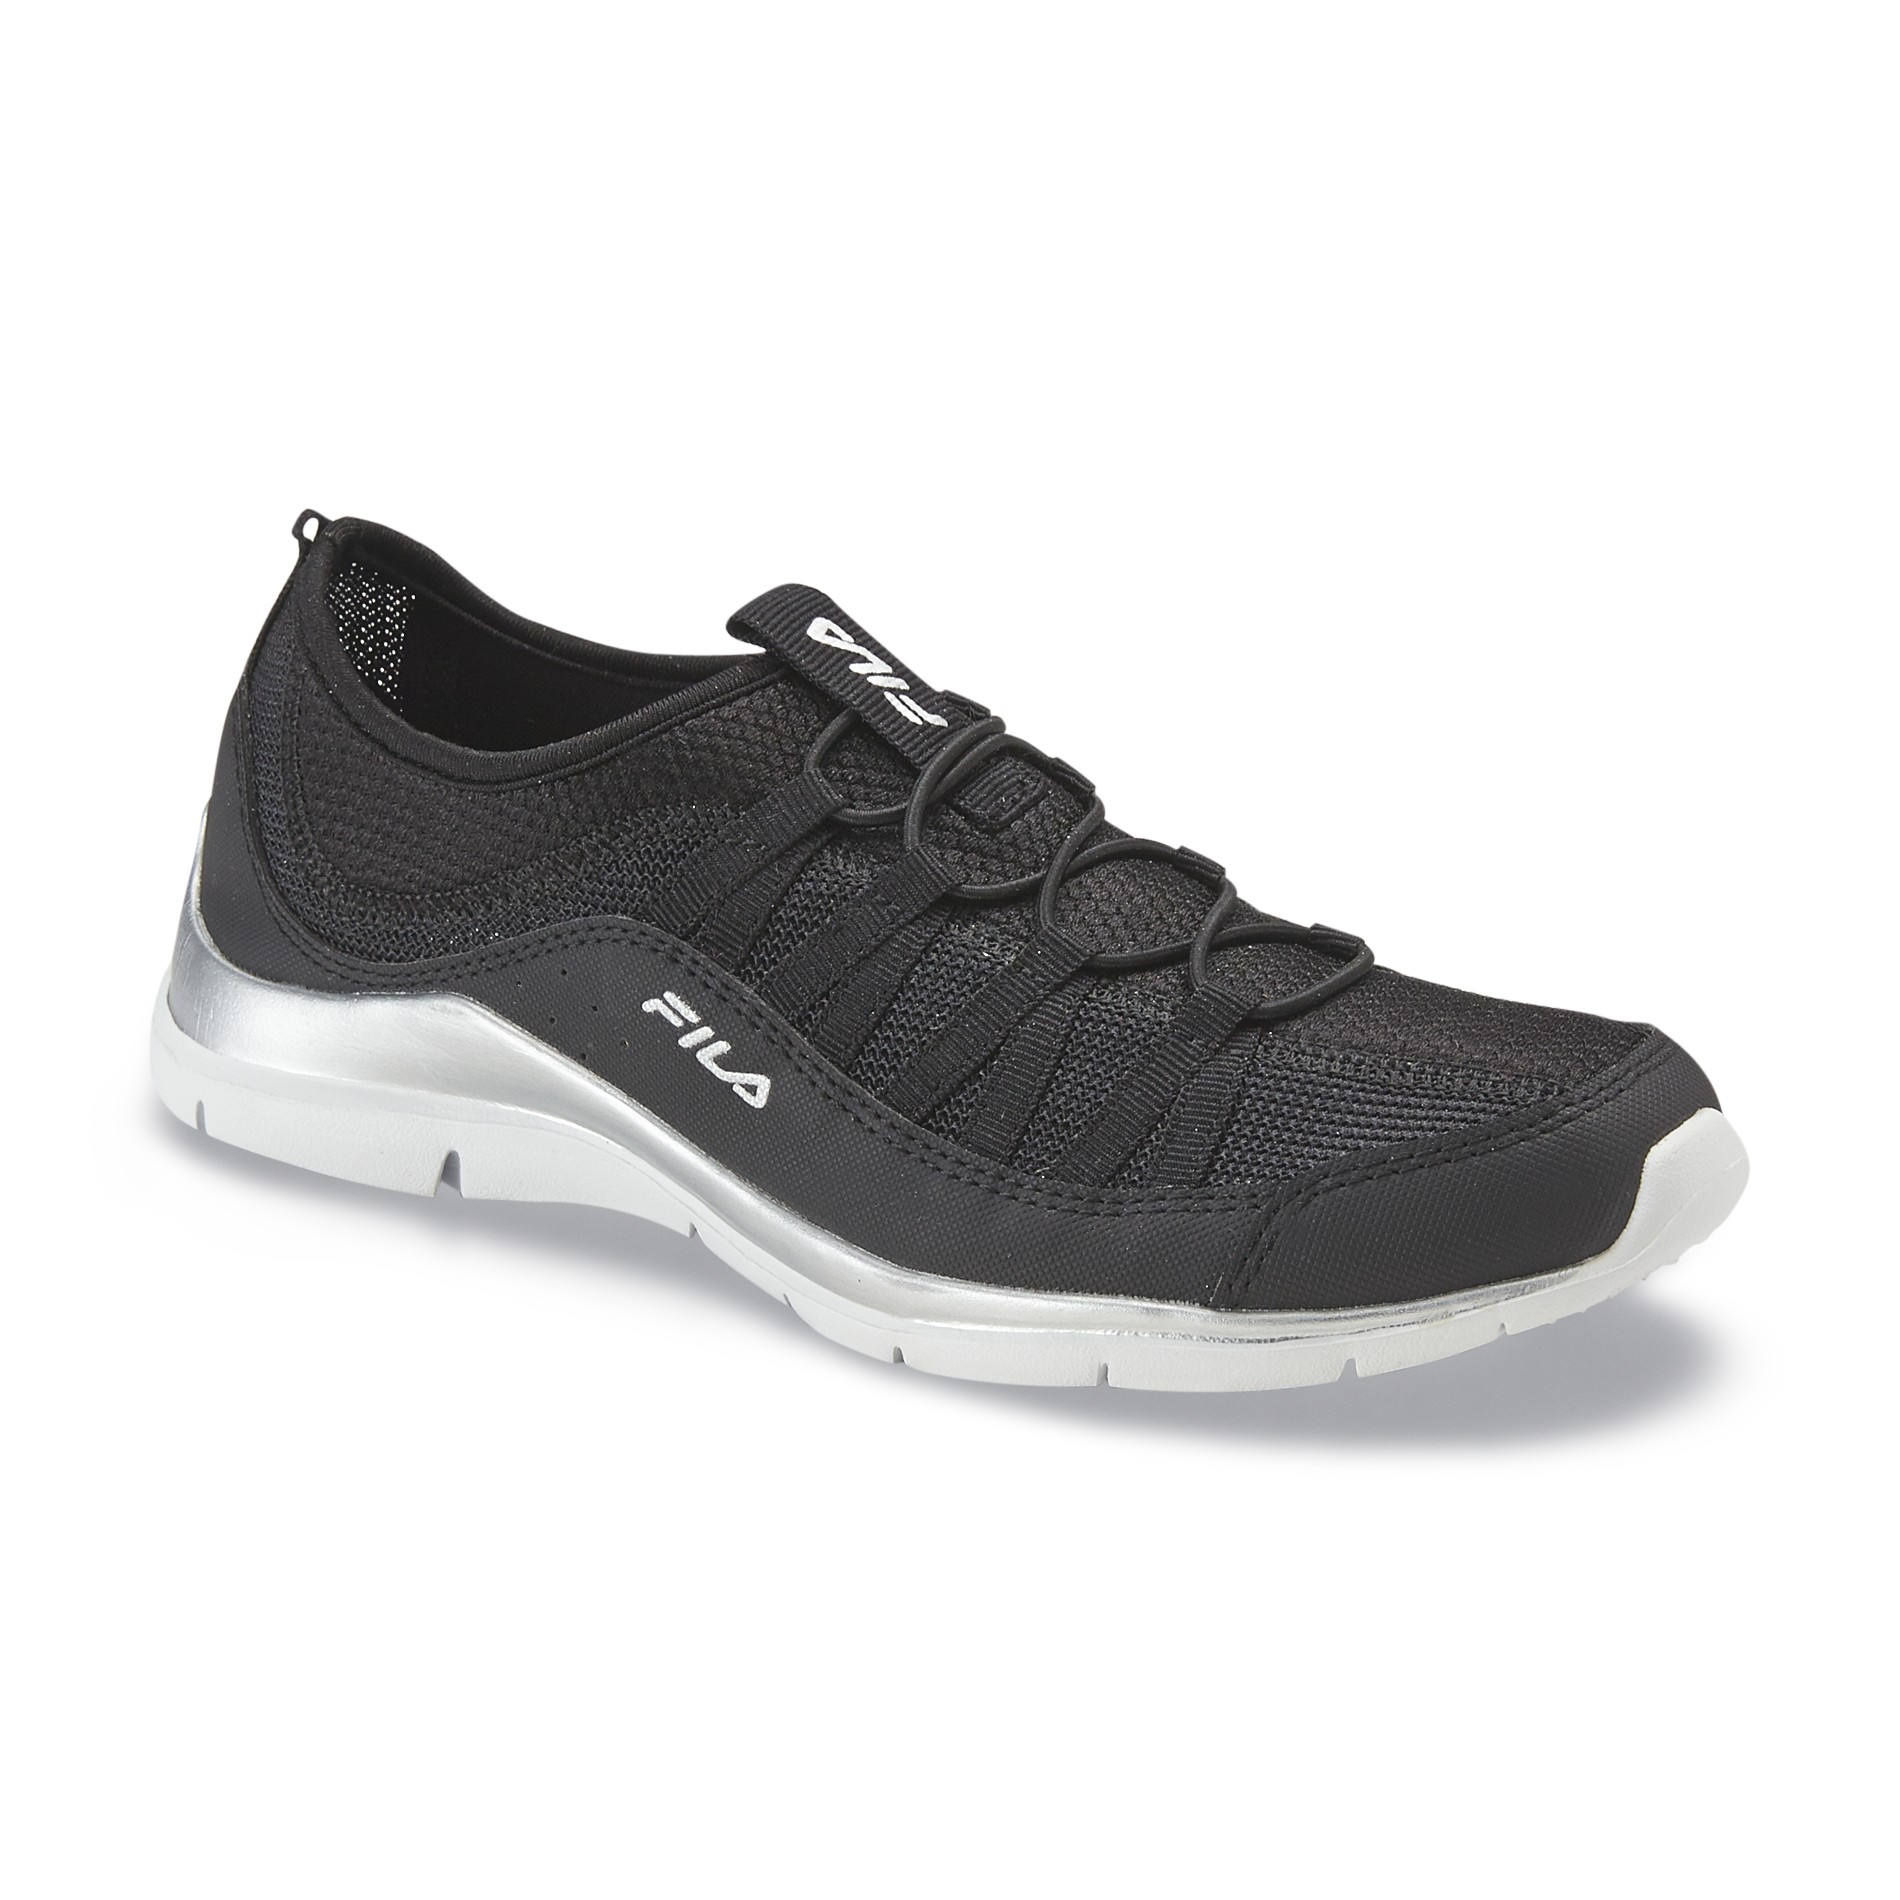 Fila Women's Vixen Athletic Shoe - Black/Silver/White